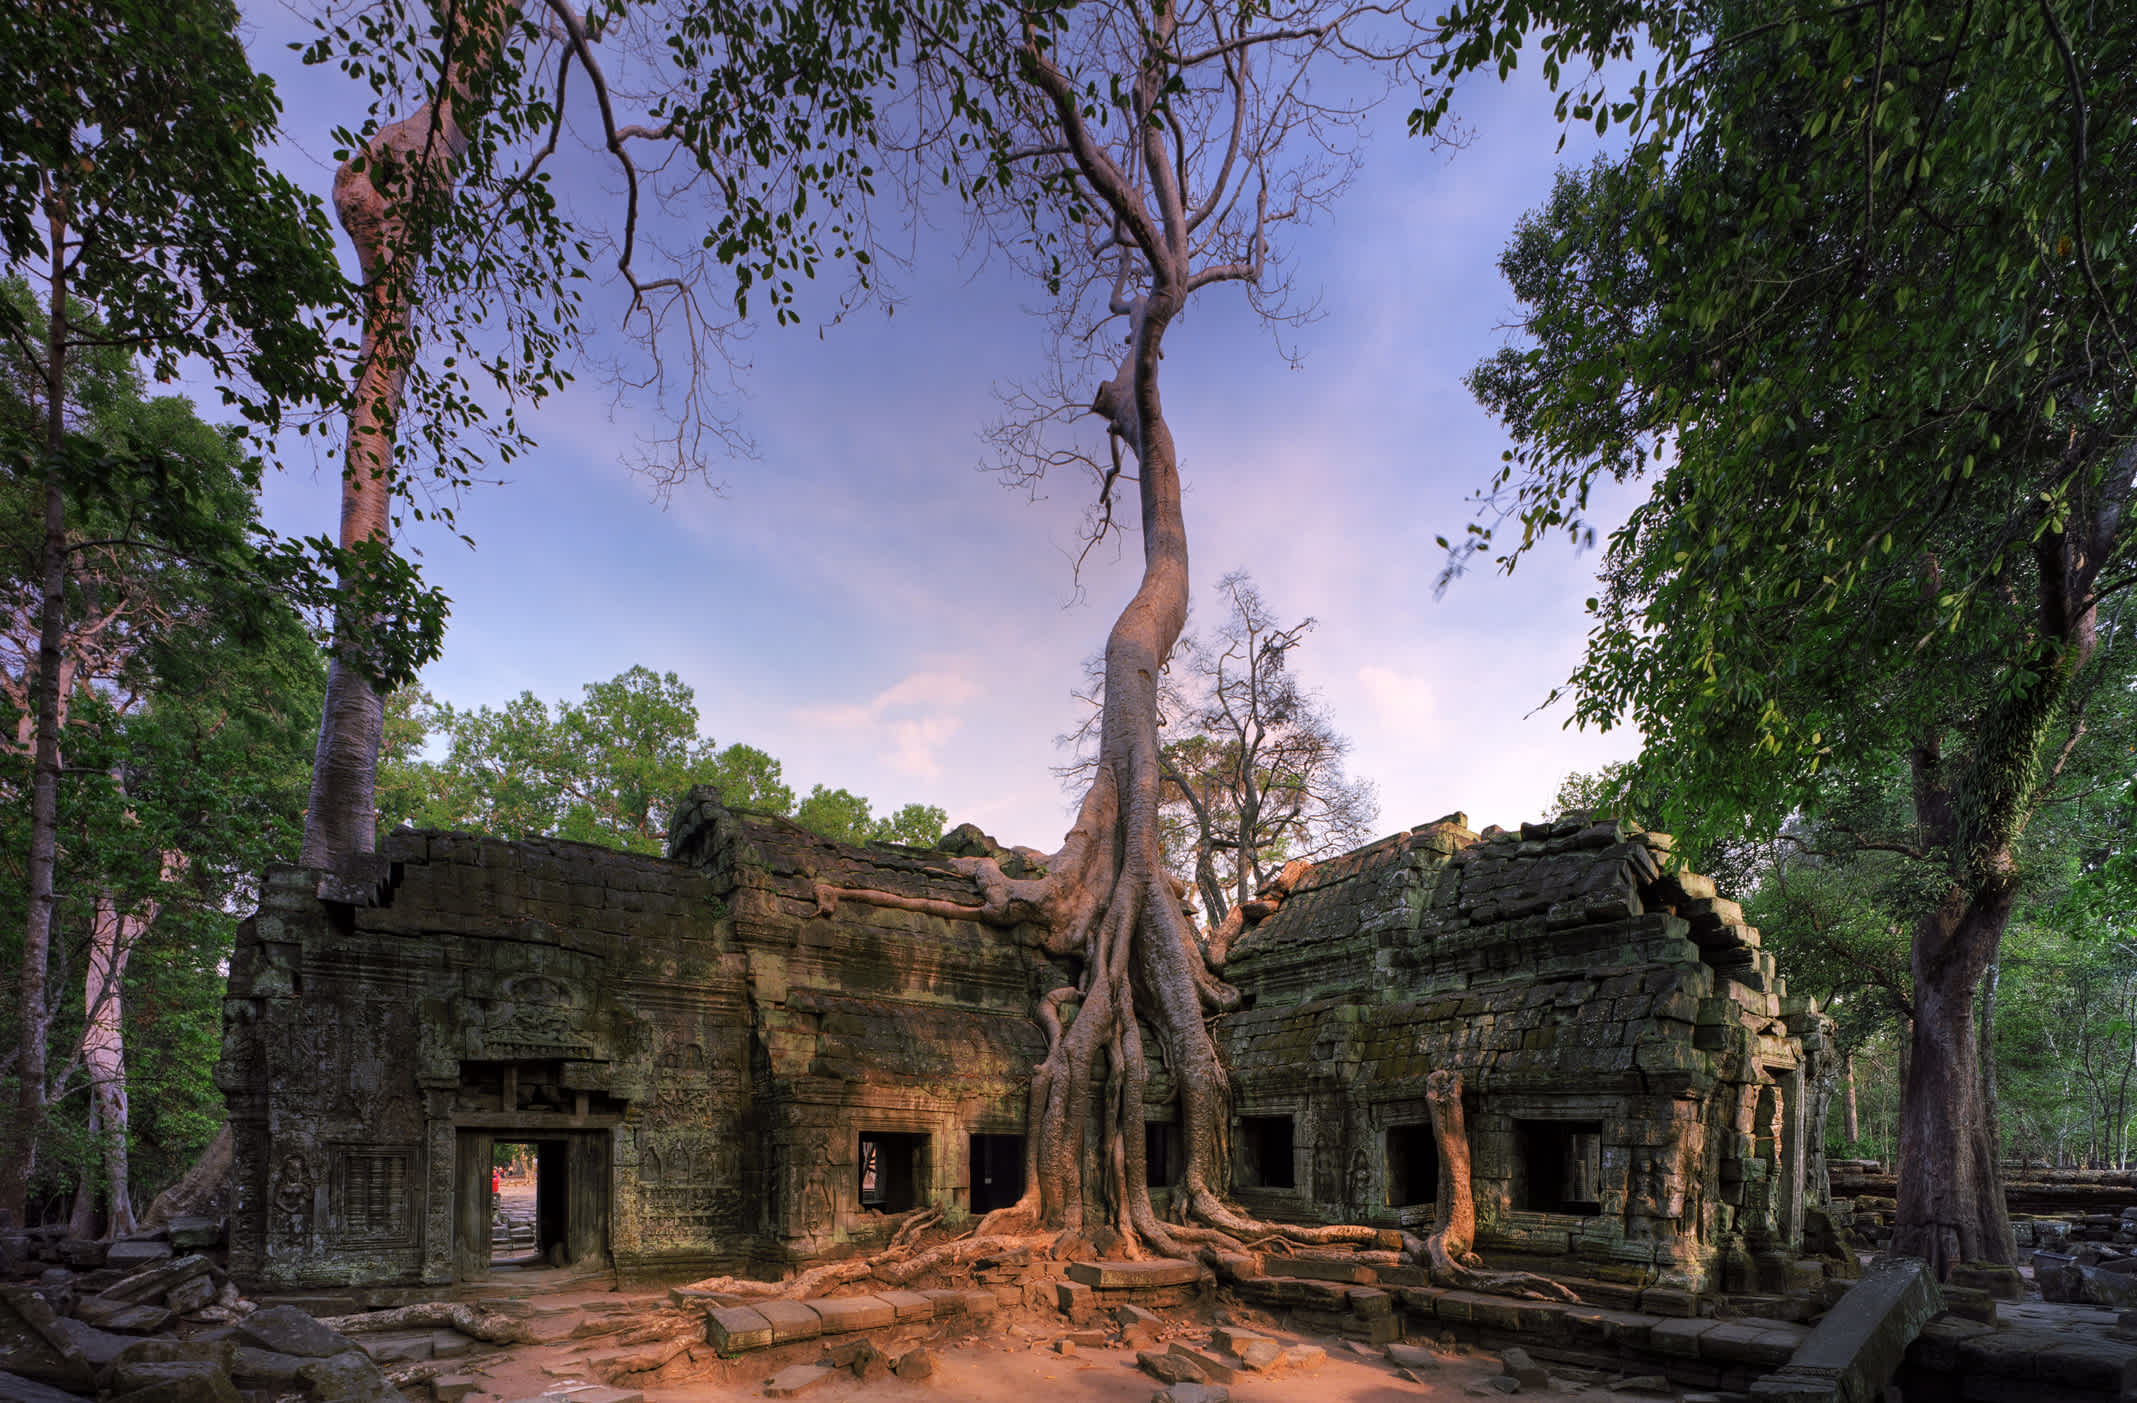 Temple Ta Prohm avant le coucher du soleil, province de Takeo, Cambodge.

